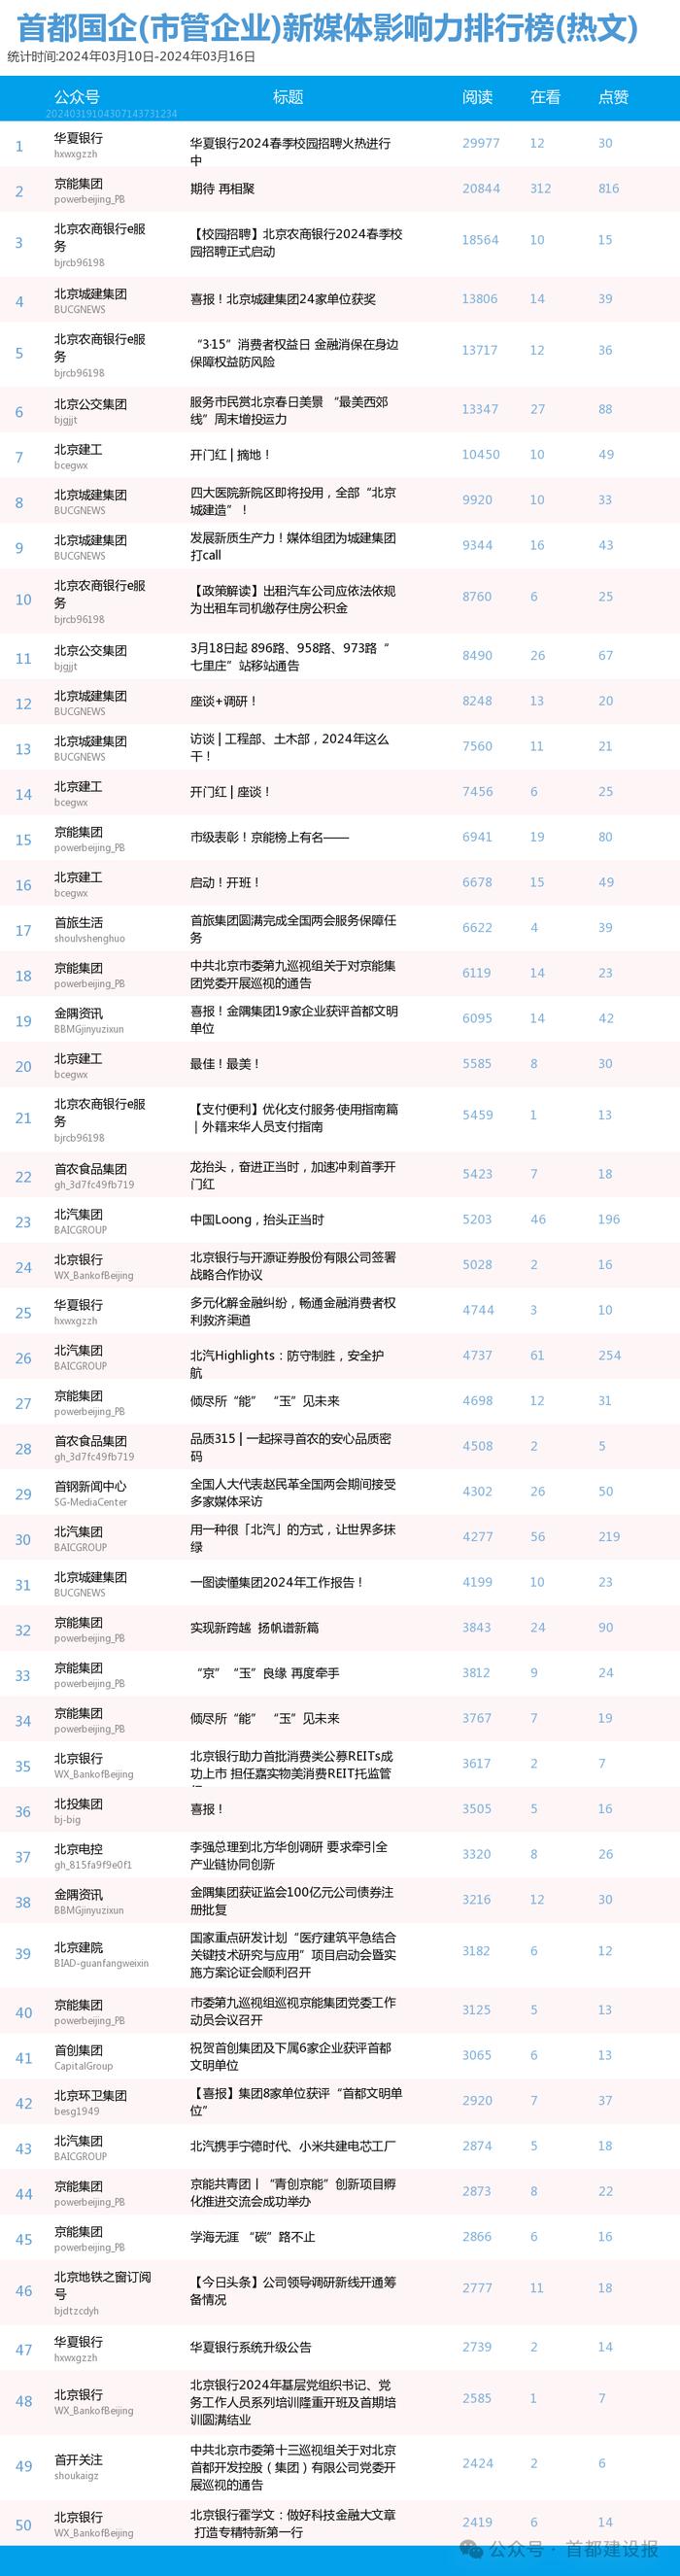 【北京国企新媒体影响力排行榜】3月周榜(3.10-3.16)第399期